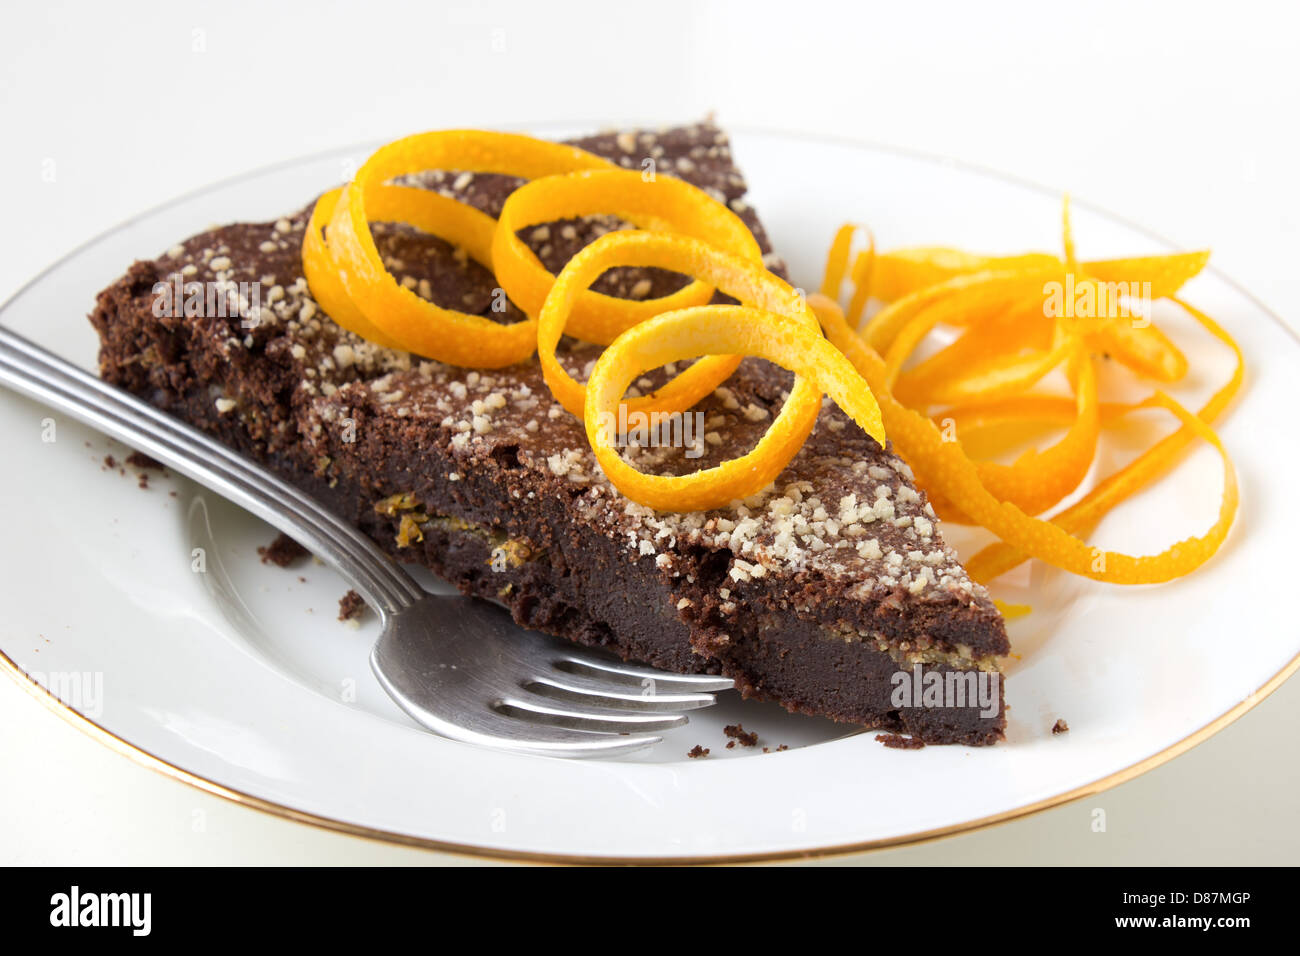 Gâteau au chocolat avec couche orange sur plaque blanche décorée de zeste d'orange. Banque D'Images